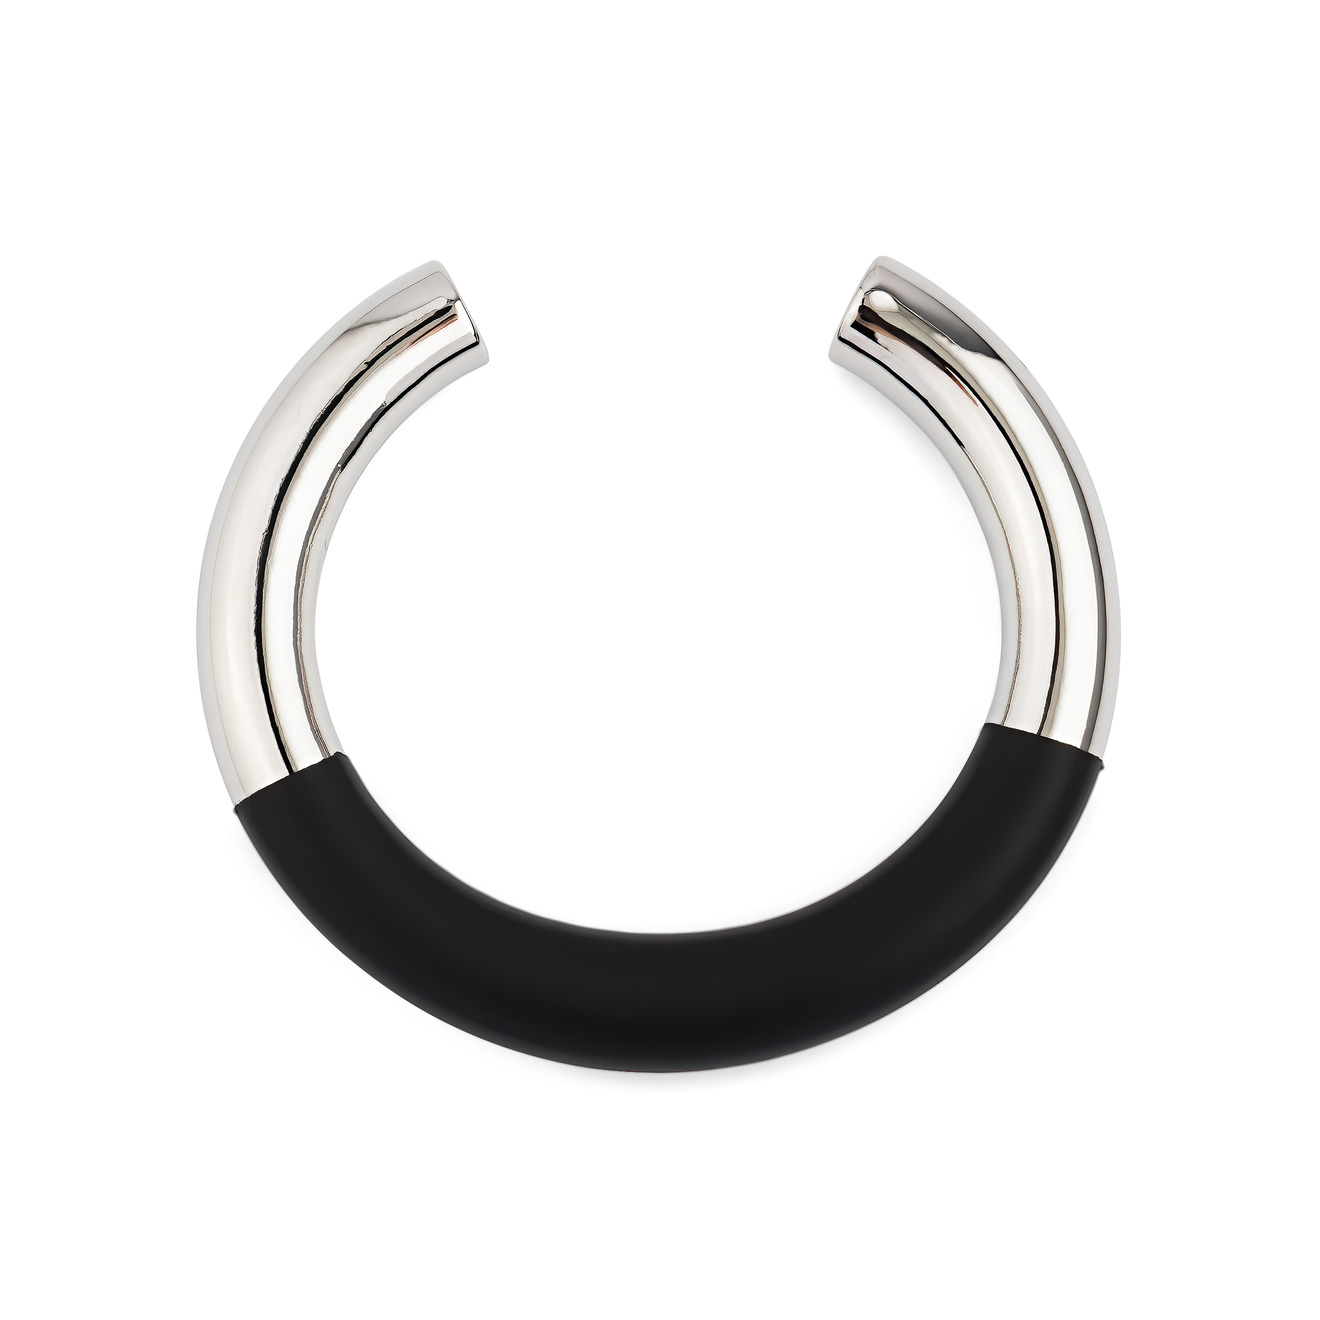 Free Form Jewelry Серебристый незавершенный браслет с черной вставкой цена и фото